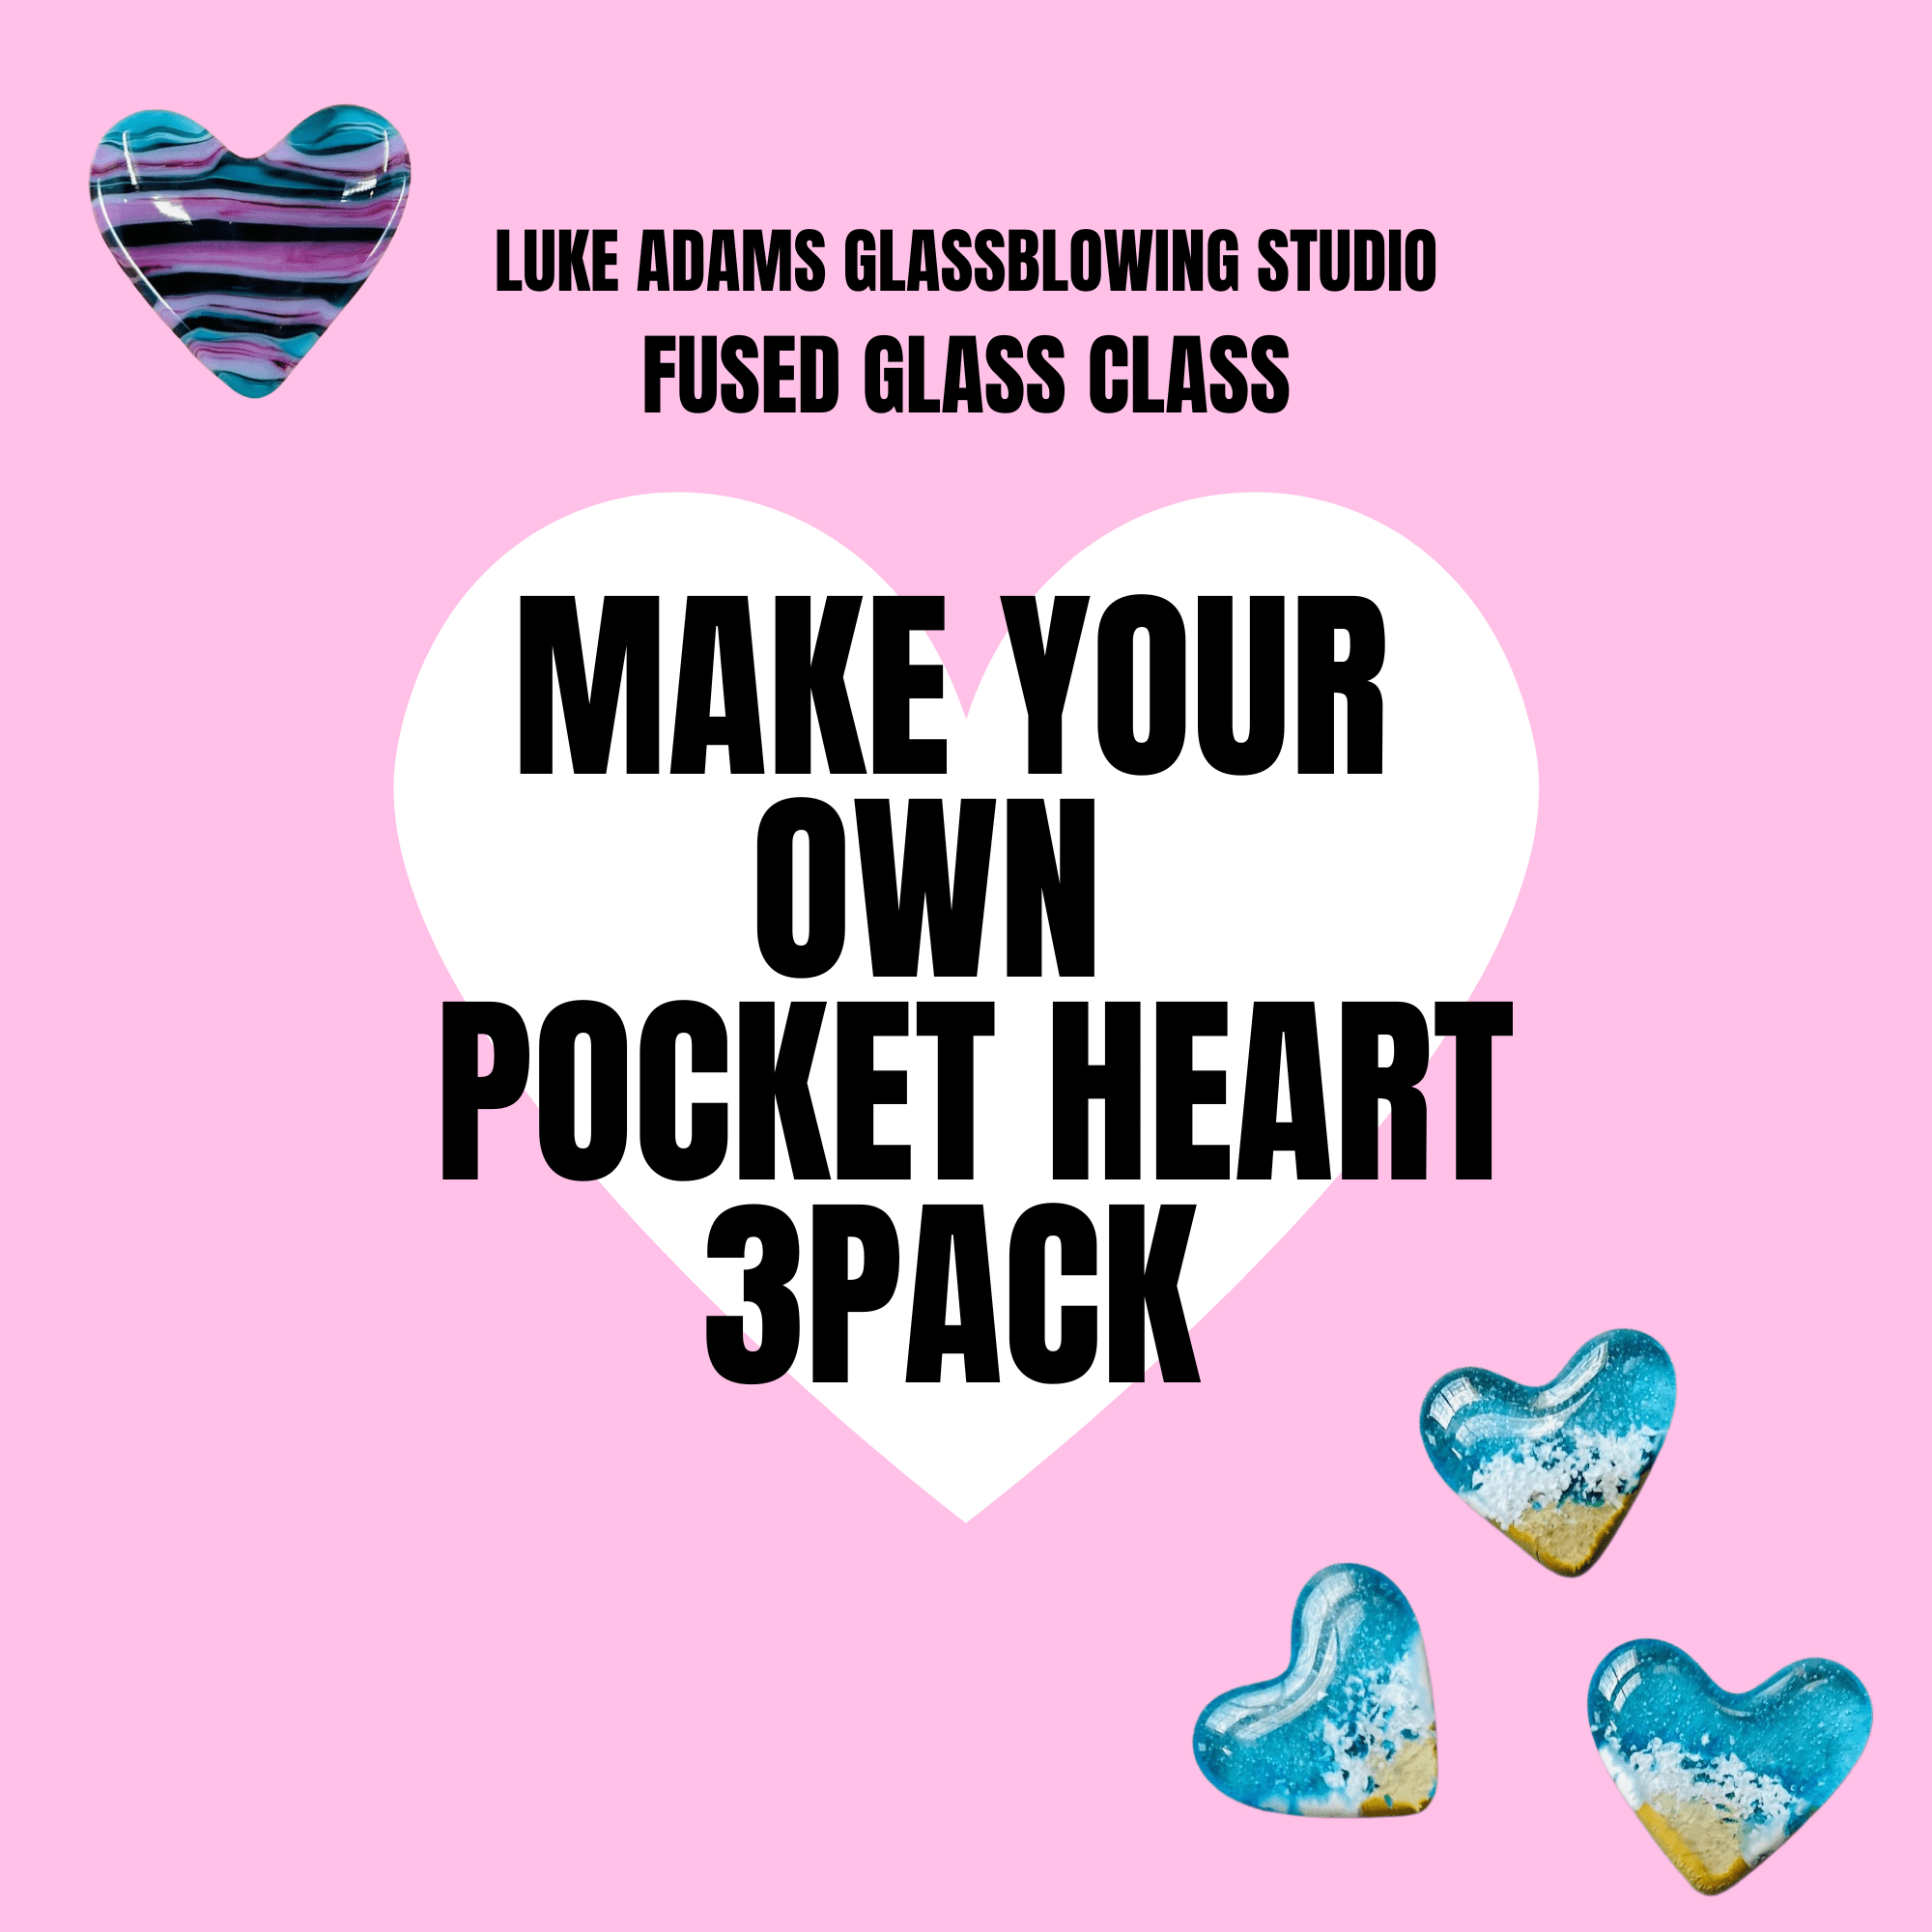 Fused Glass Pocket Heart Class Class Luke Adams Glass Blowing Studio 